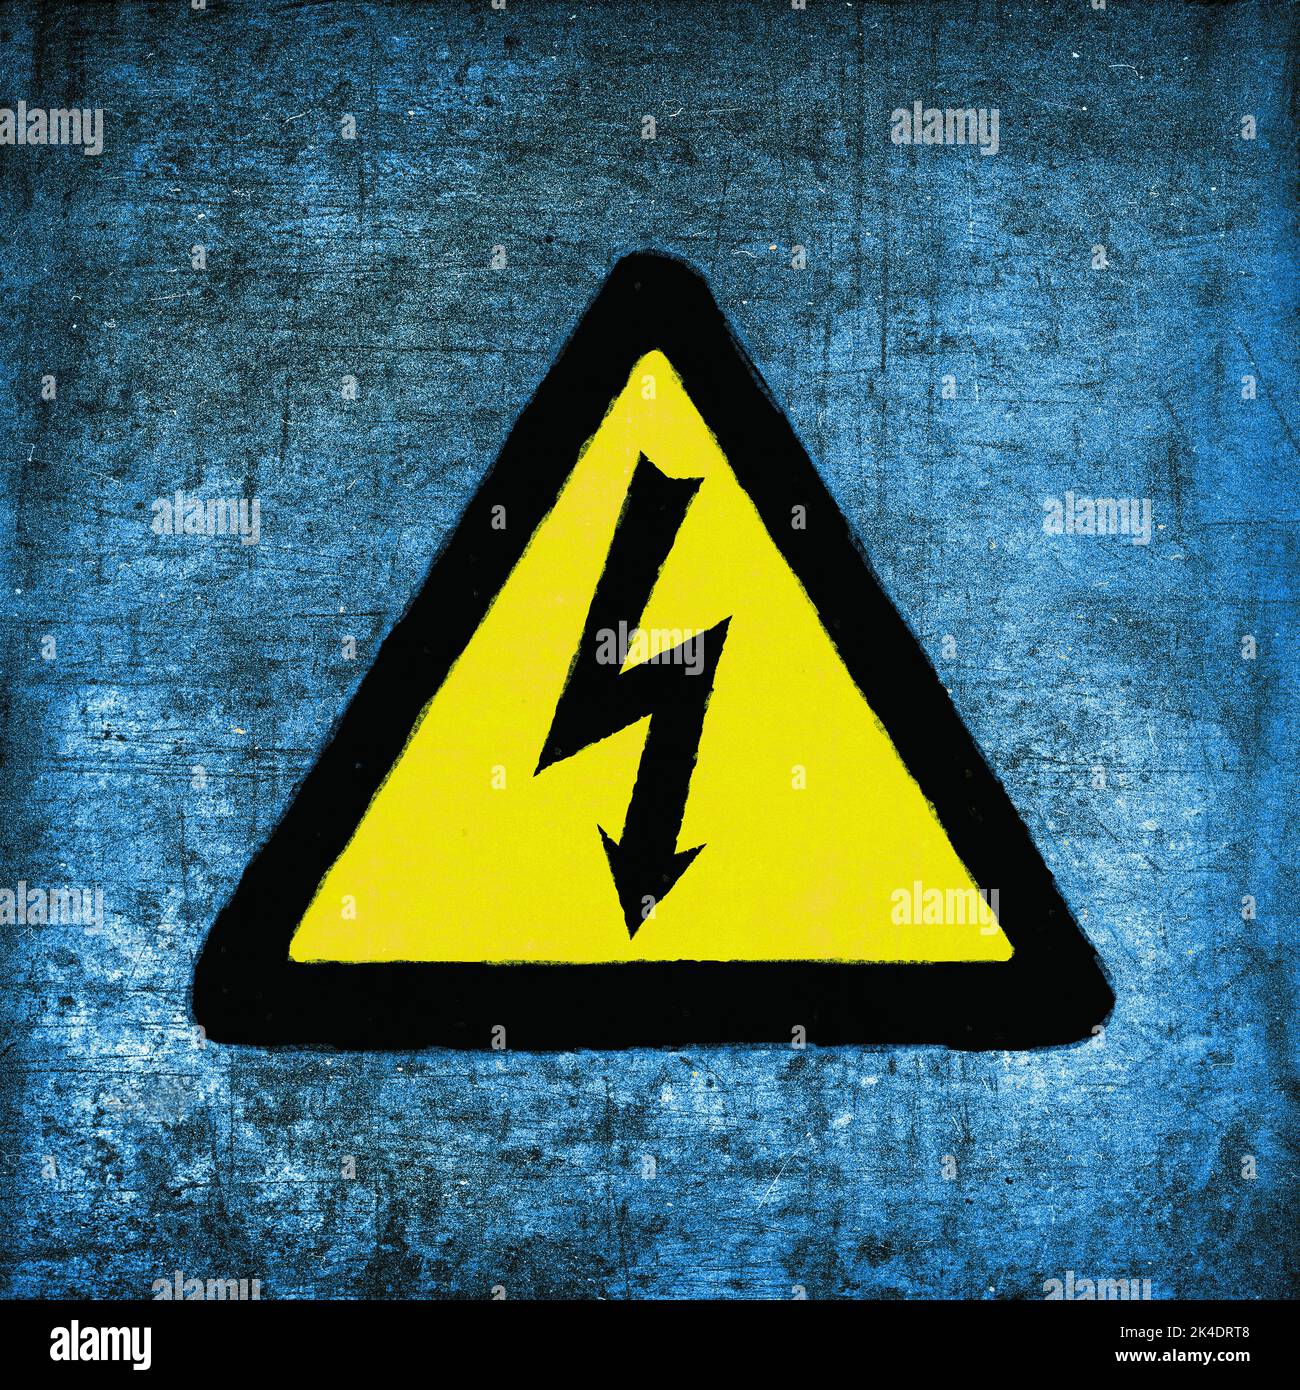 Hochspannungsschild, gelb und schwarz auf blau. Emblem für elektrische Gefahren, grunge strukturiert Stockfoto